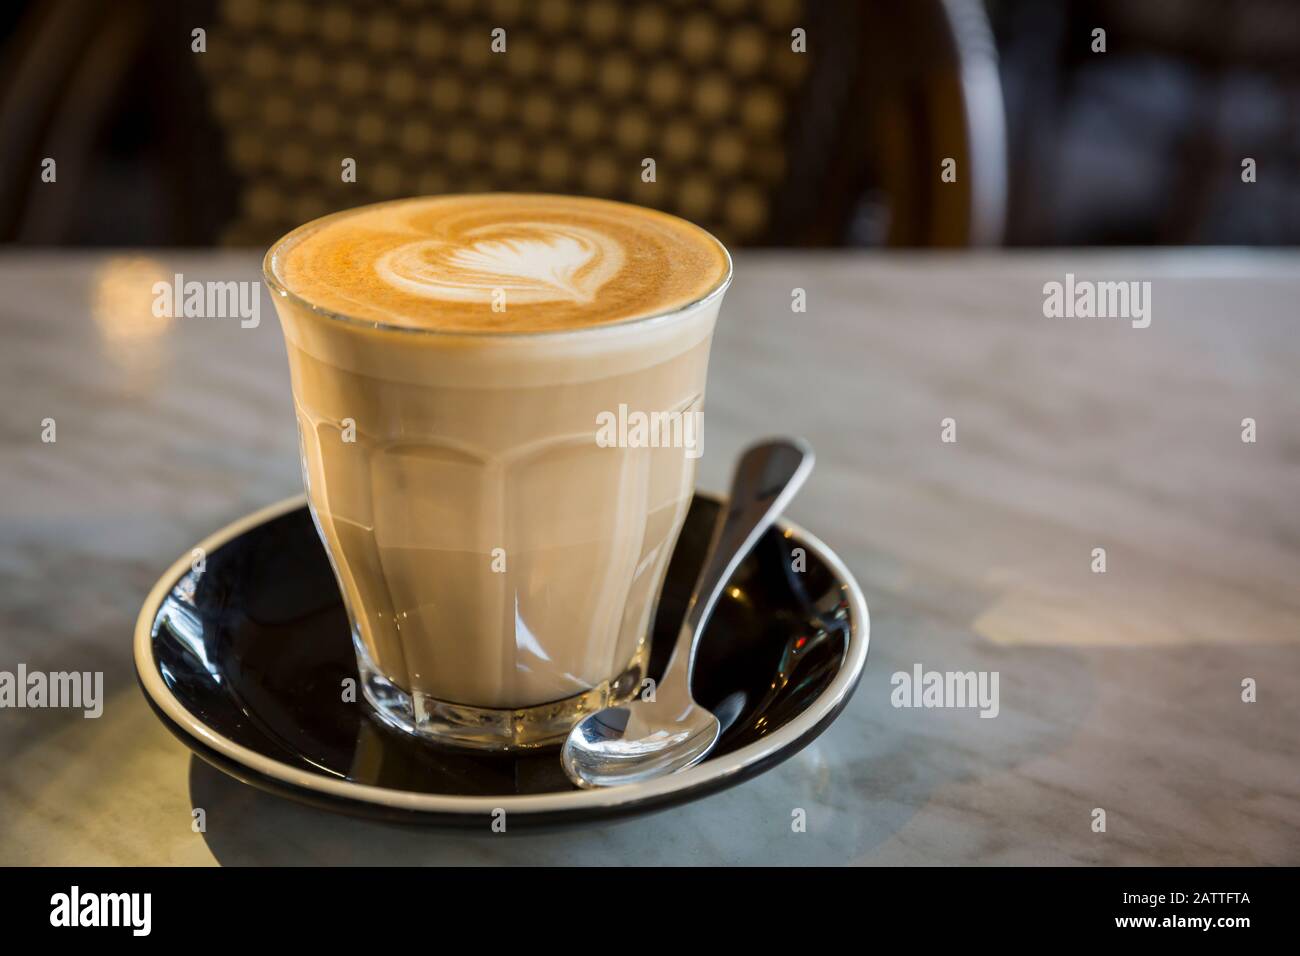 Kaffee Latte aus Glas in herzförmiger Latte Art in Milchschaum  Stockfotografie - Alamy